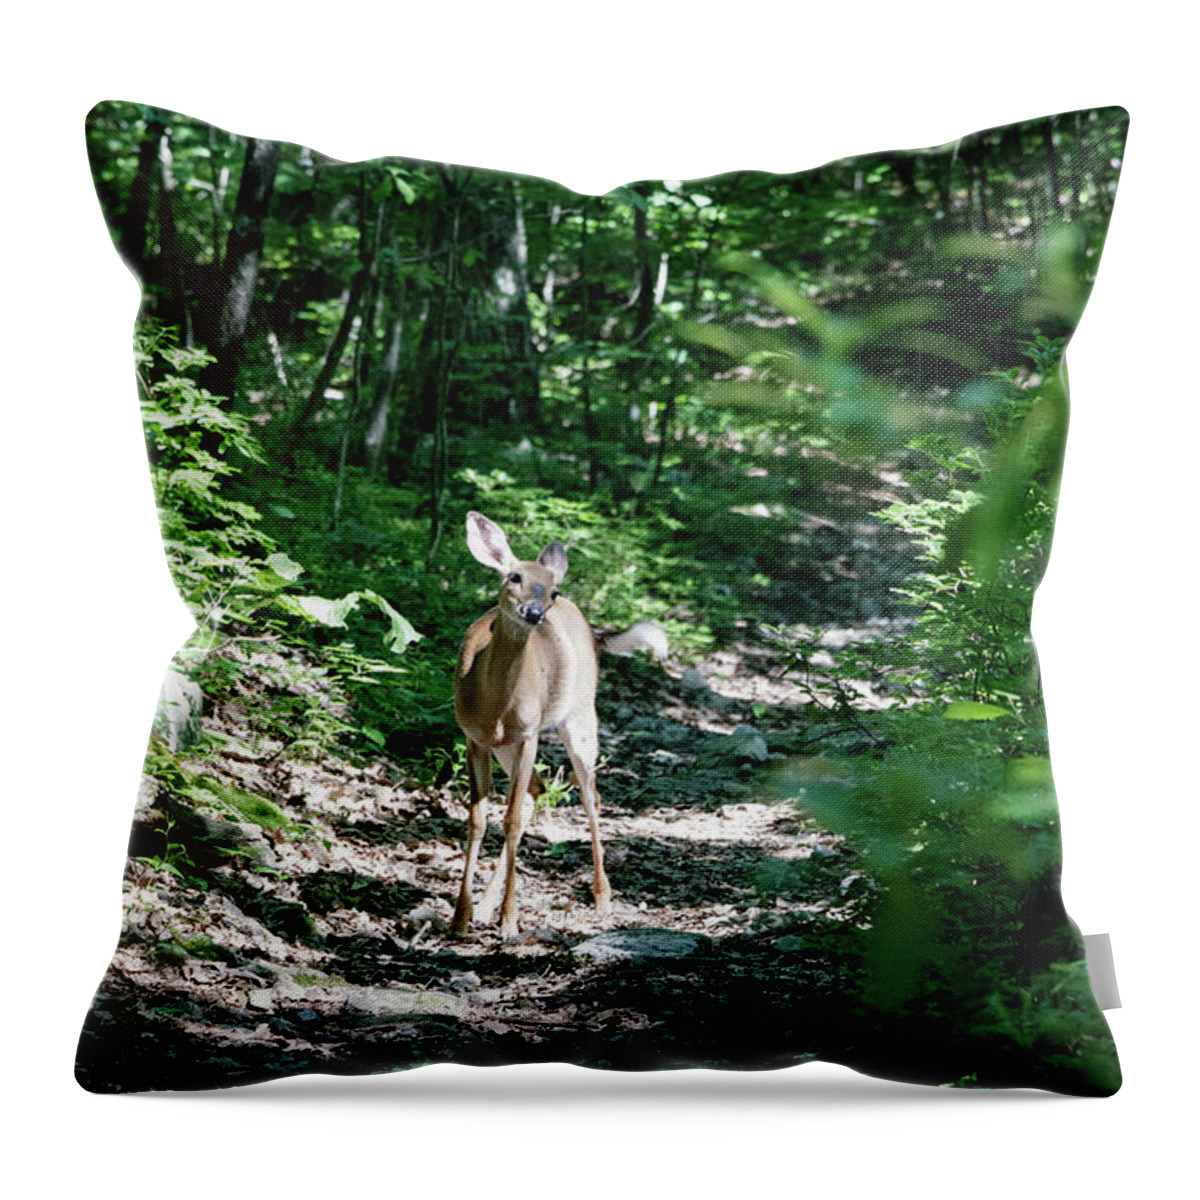 Deer Throw Pillow featuring the photograph Curious Deer by Natural Vista Photography - Matt Sexton